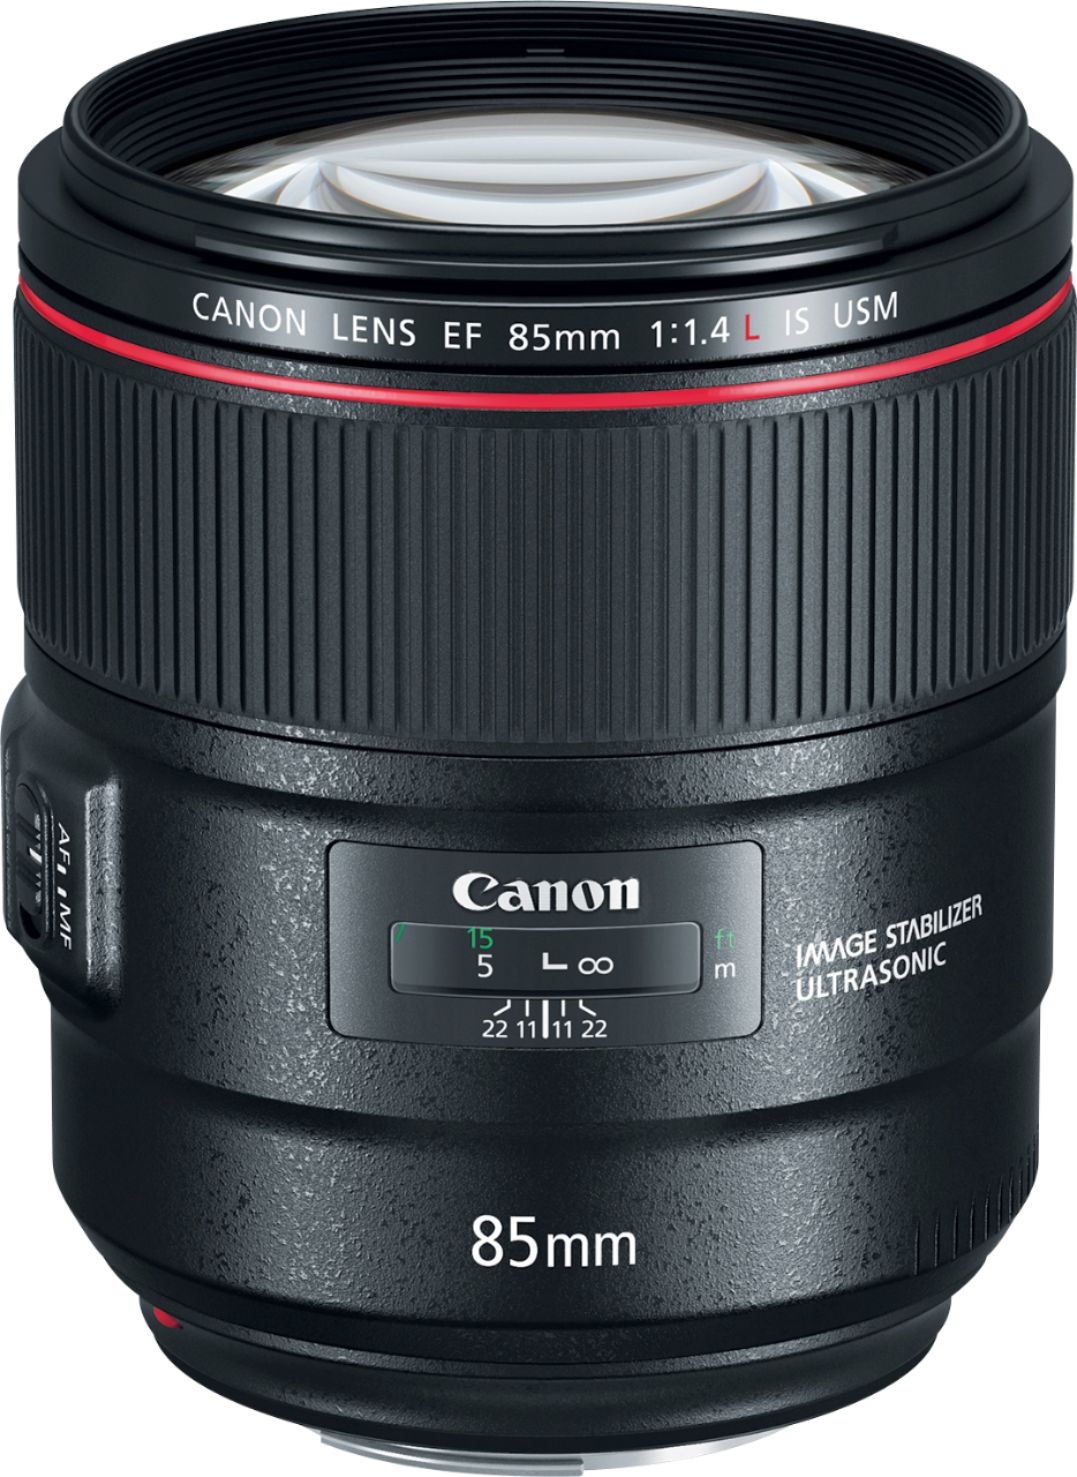 Canon EF85mm F1.4L IS USM Telephoto Lens for EOS DSLR Cameras Black  2271C002 - Best Buy